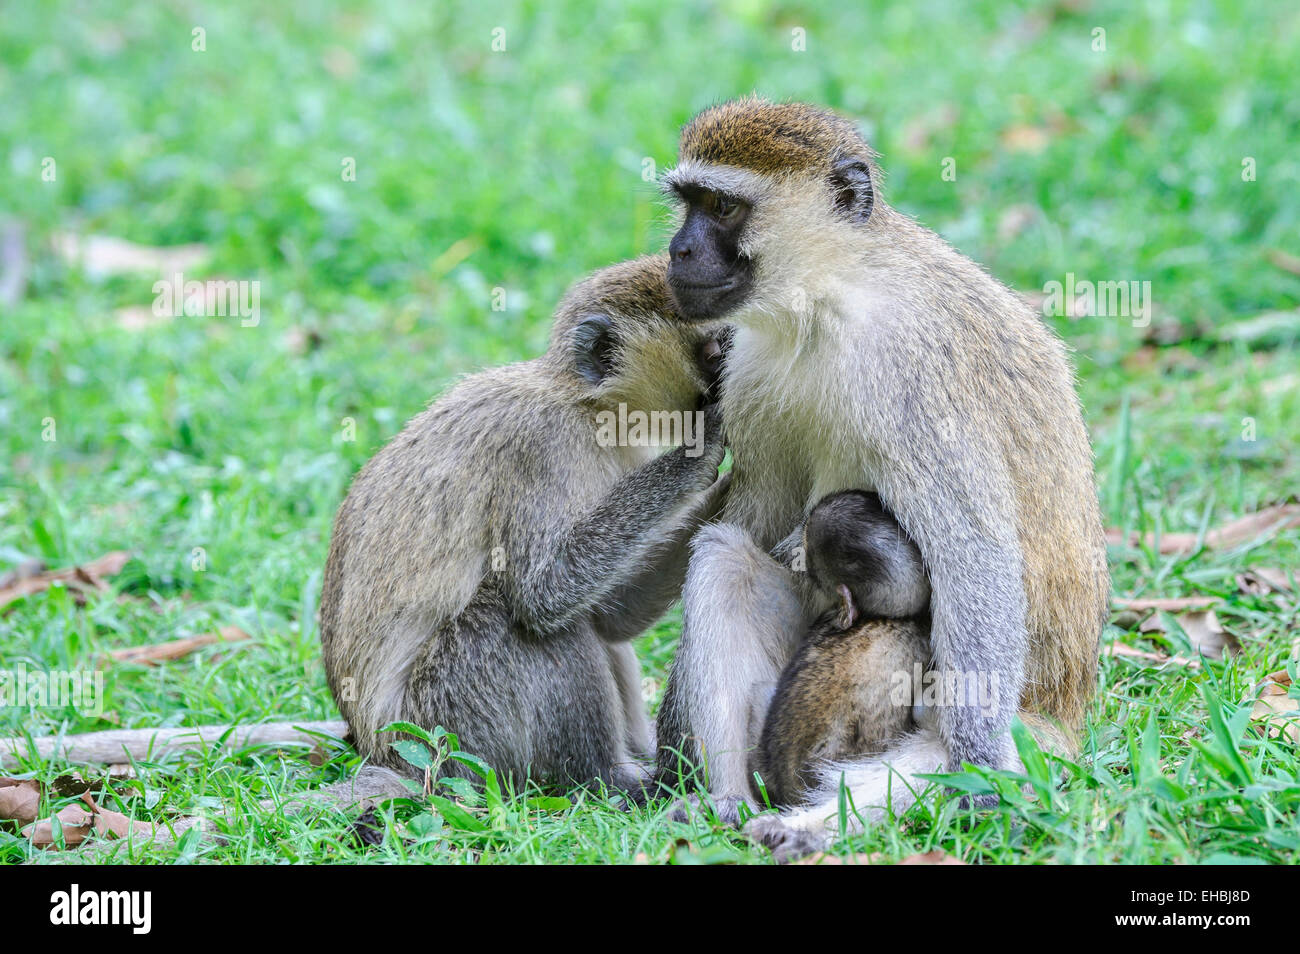 Erwachsenes Weibchen einen Vervet Affen, einer alten Welt Affe präparierte mit ihrem Nachwuchs, klammerte sich an ihr. Stockfoto